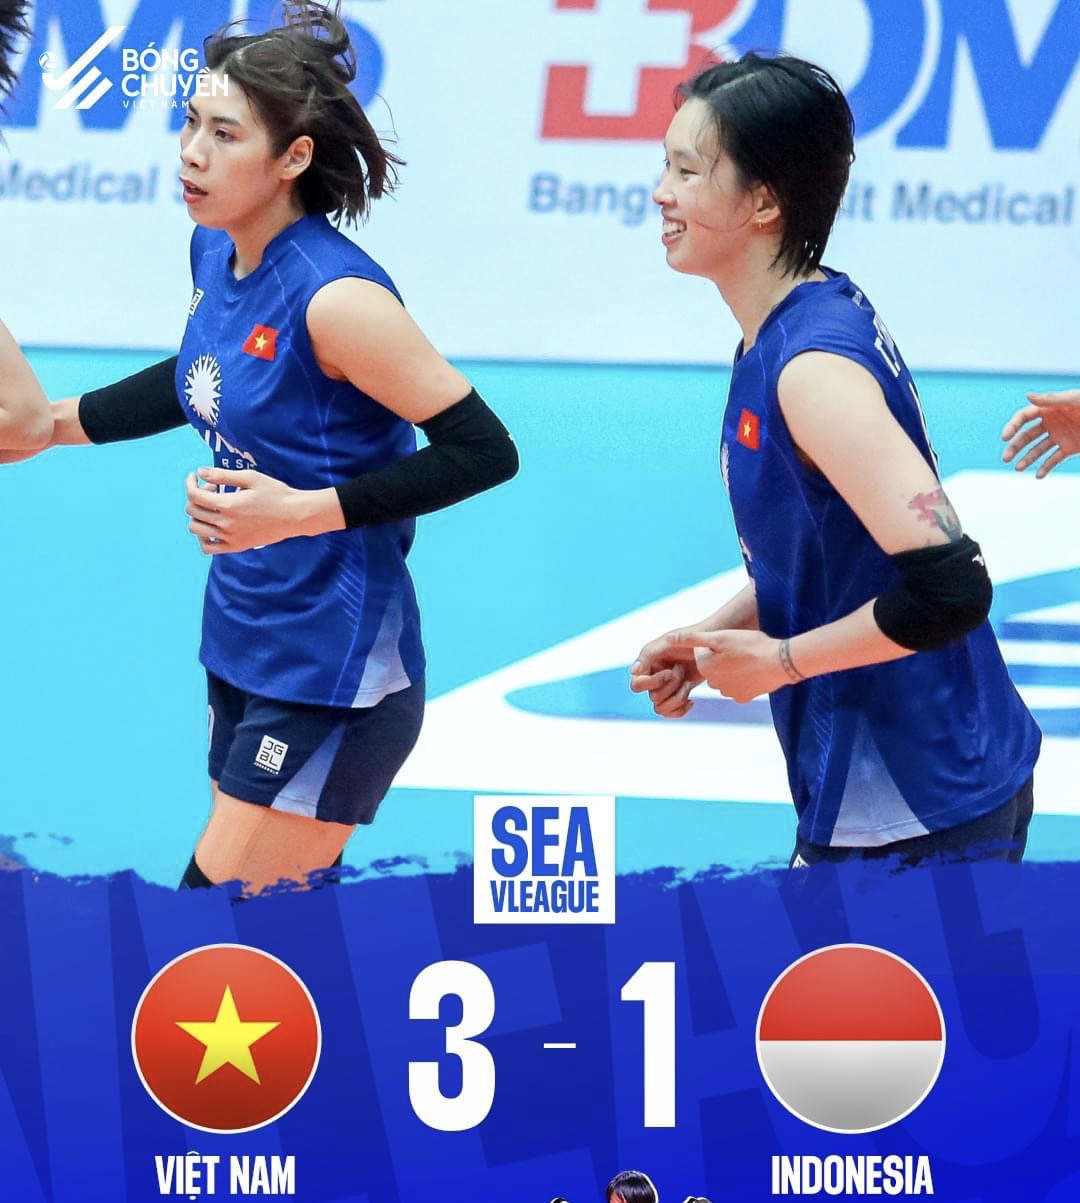 Tuyển nữ bóng chuyền Việt Nam đánh bại Indonesia với tỉ số 3-1. Ảnh: Bóng chuyền Việt Nam